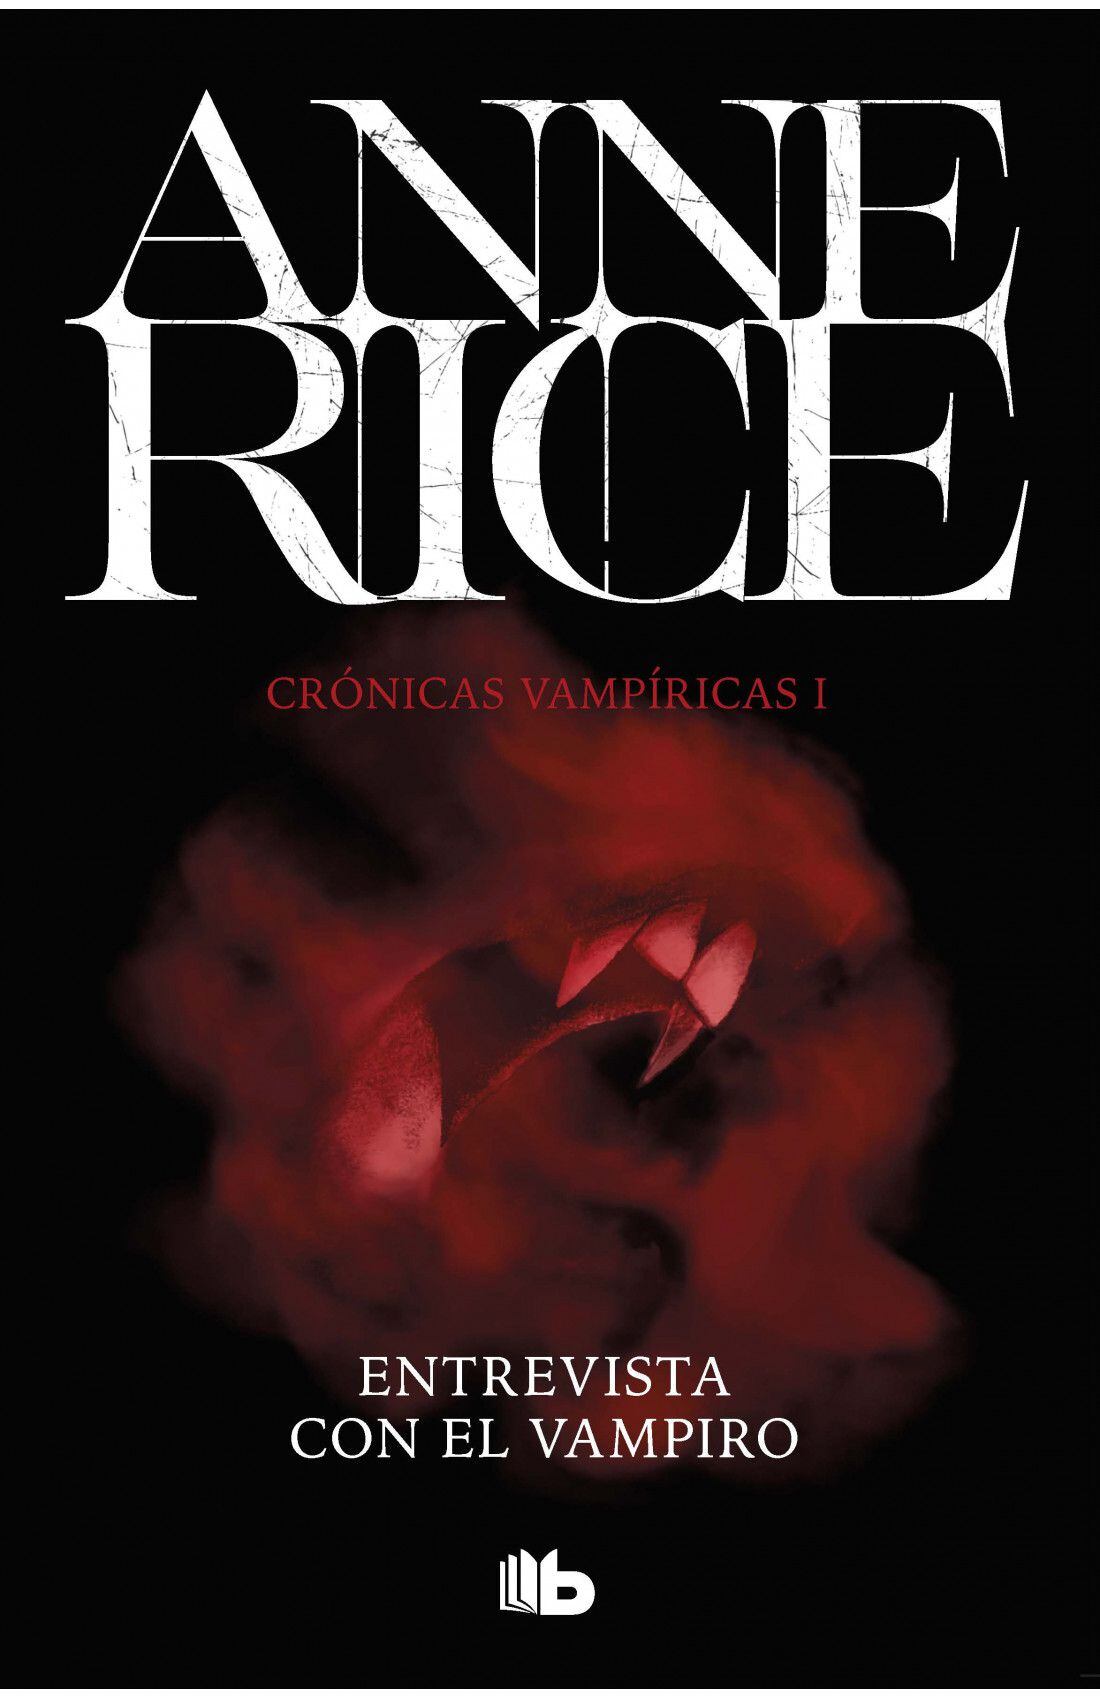 Portada del libro "Entrevista con el vampiro. Crónicas Vampíricas I, de Anne Rice.